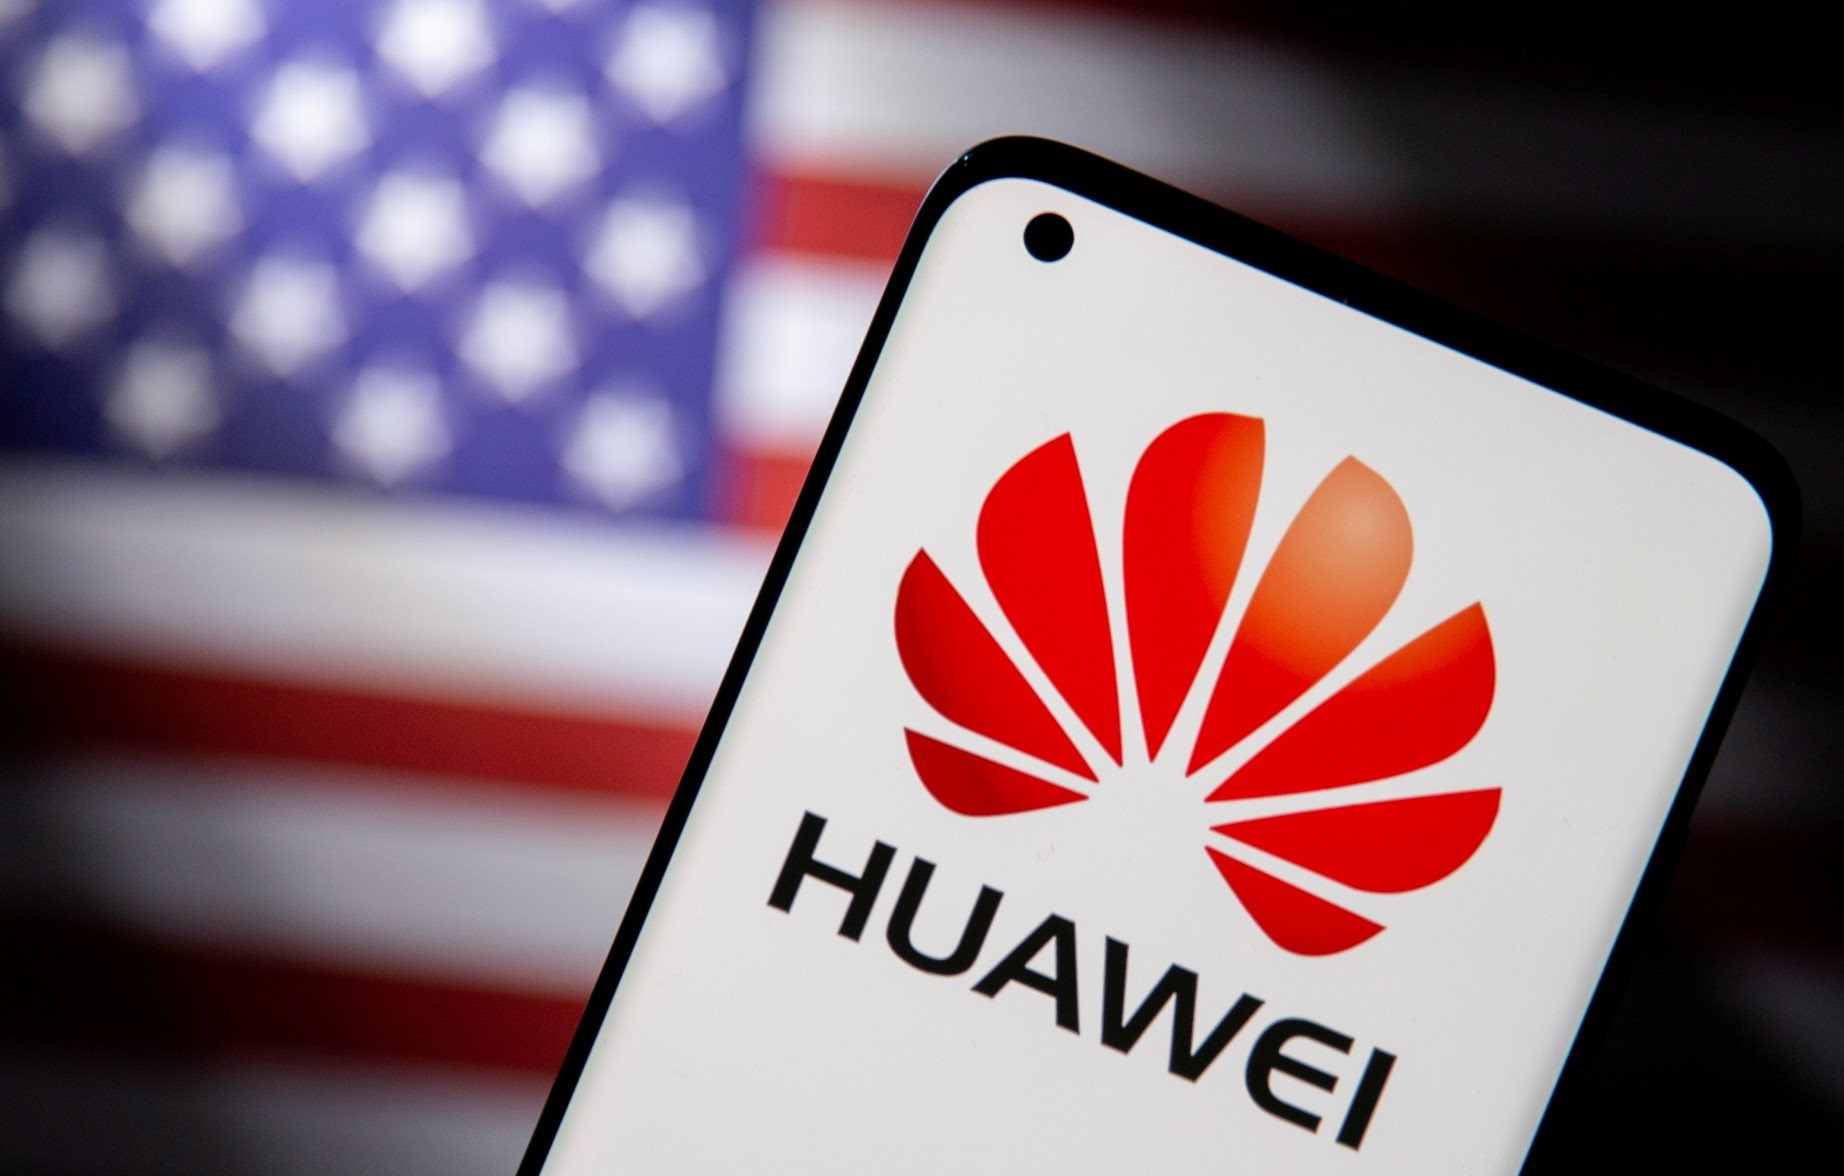 Đặt một ván cược lớn, đây là cách Huawei tìm ra khe hở vượt bức tường cách ly và bằng mọi giá mở đường cho “giấc mơ Mỹ”